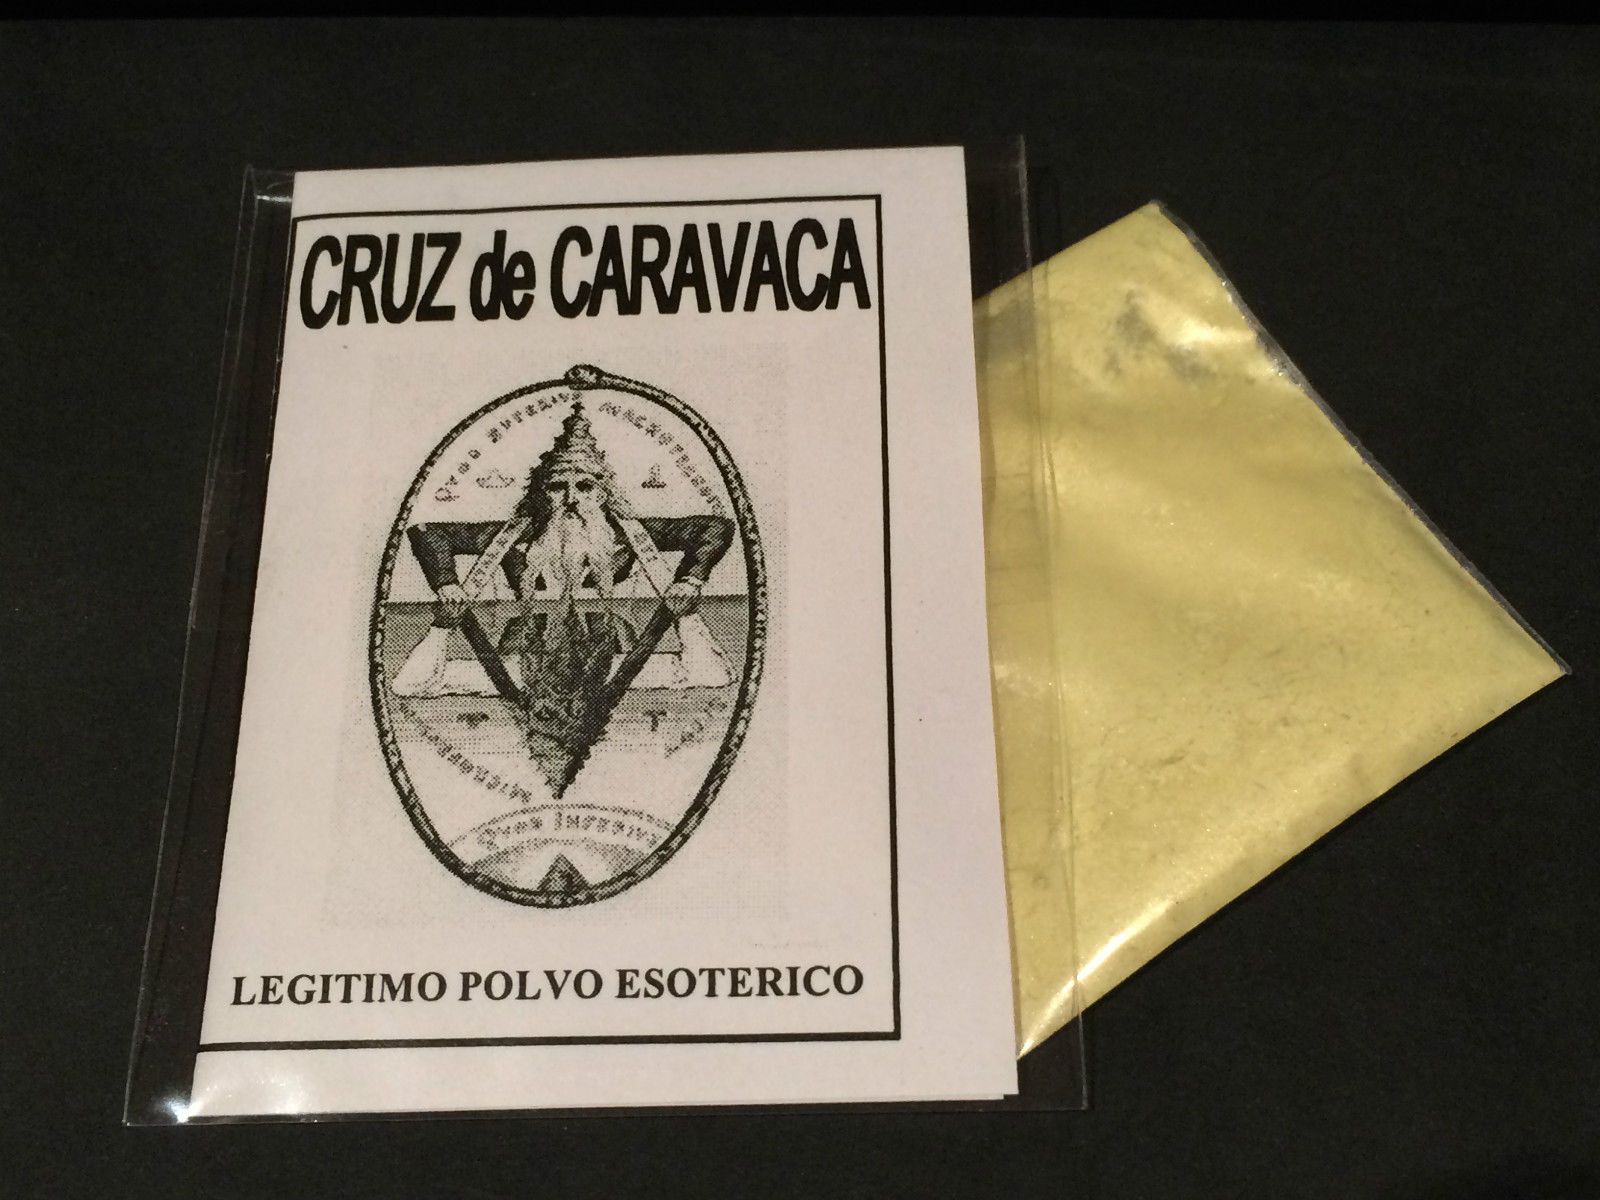  LEGITIMO POLVO ESOTERICO ESPECIAL " CRUZ DE CARAVACA "